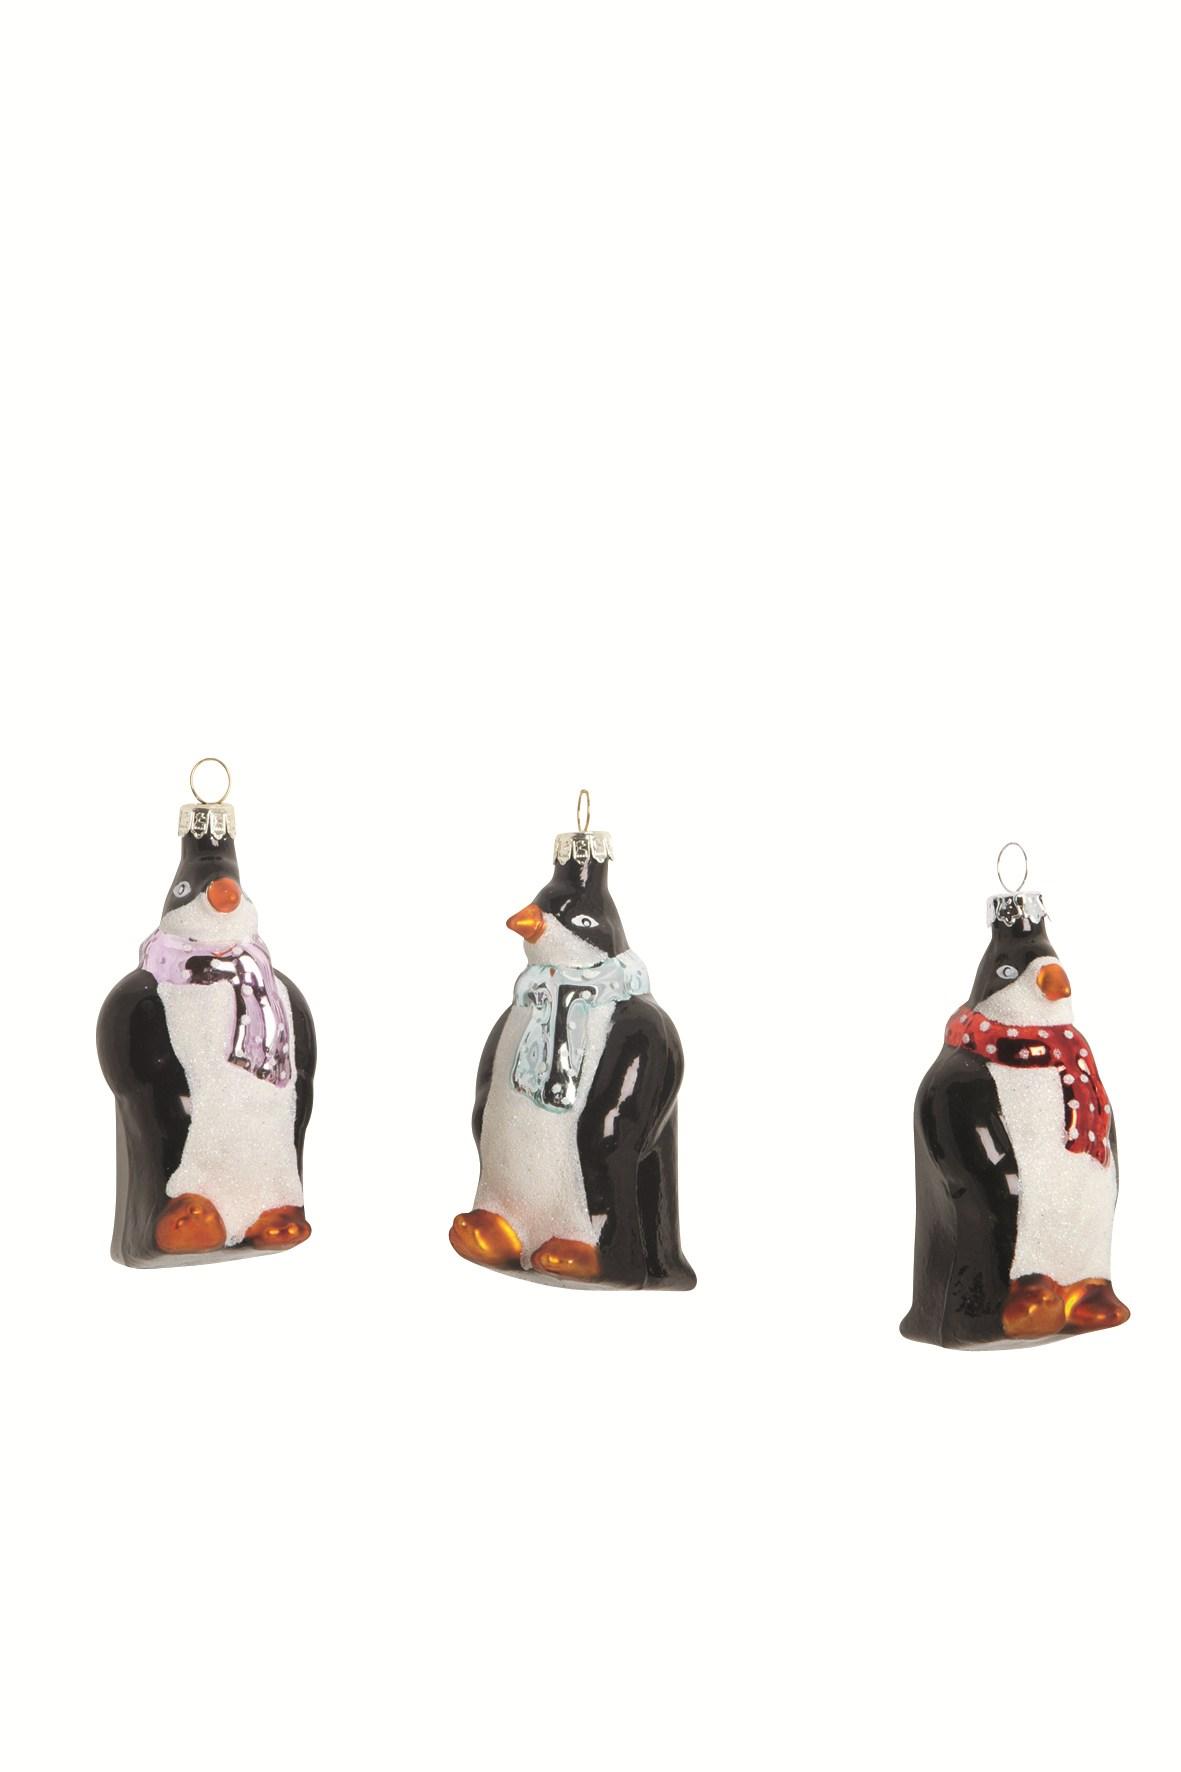 17-pinguïn.jpg FR